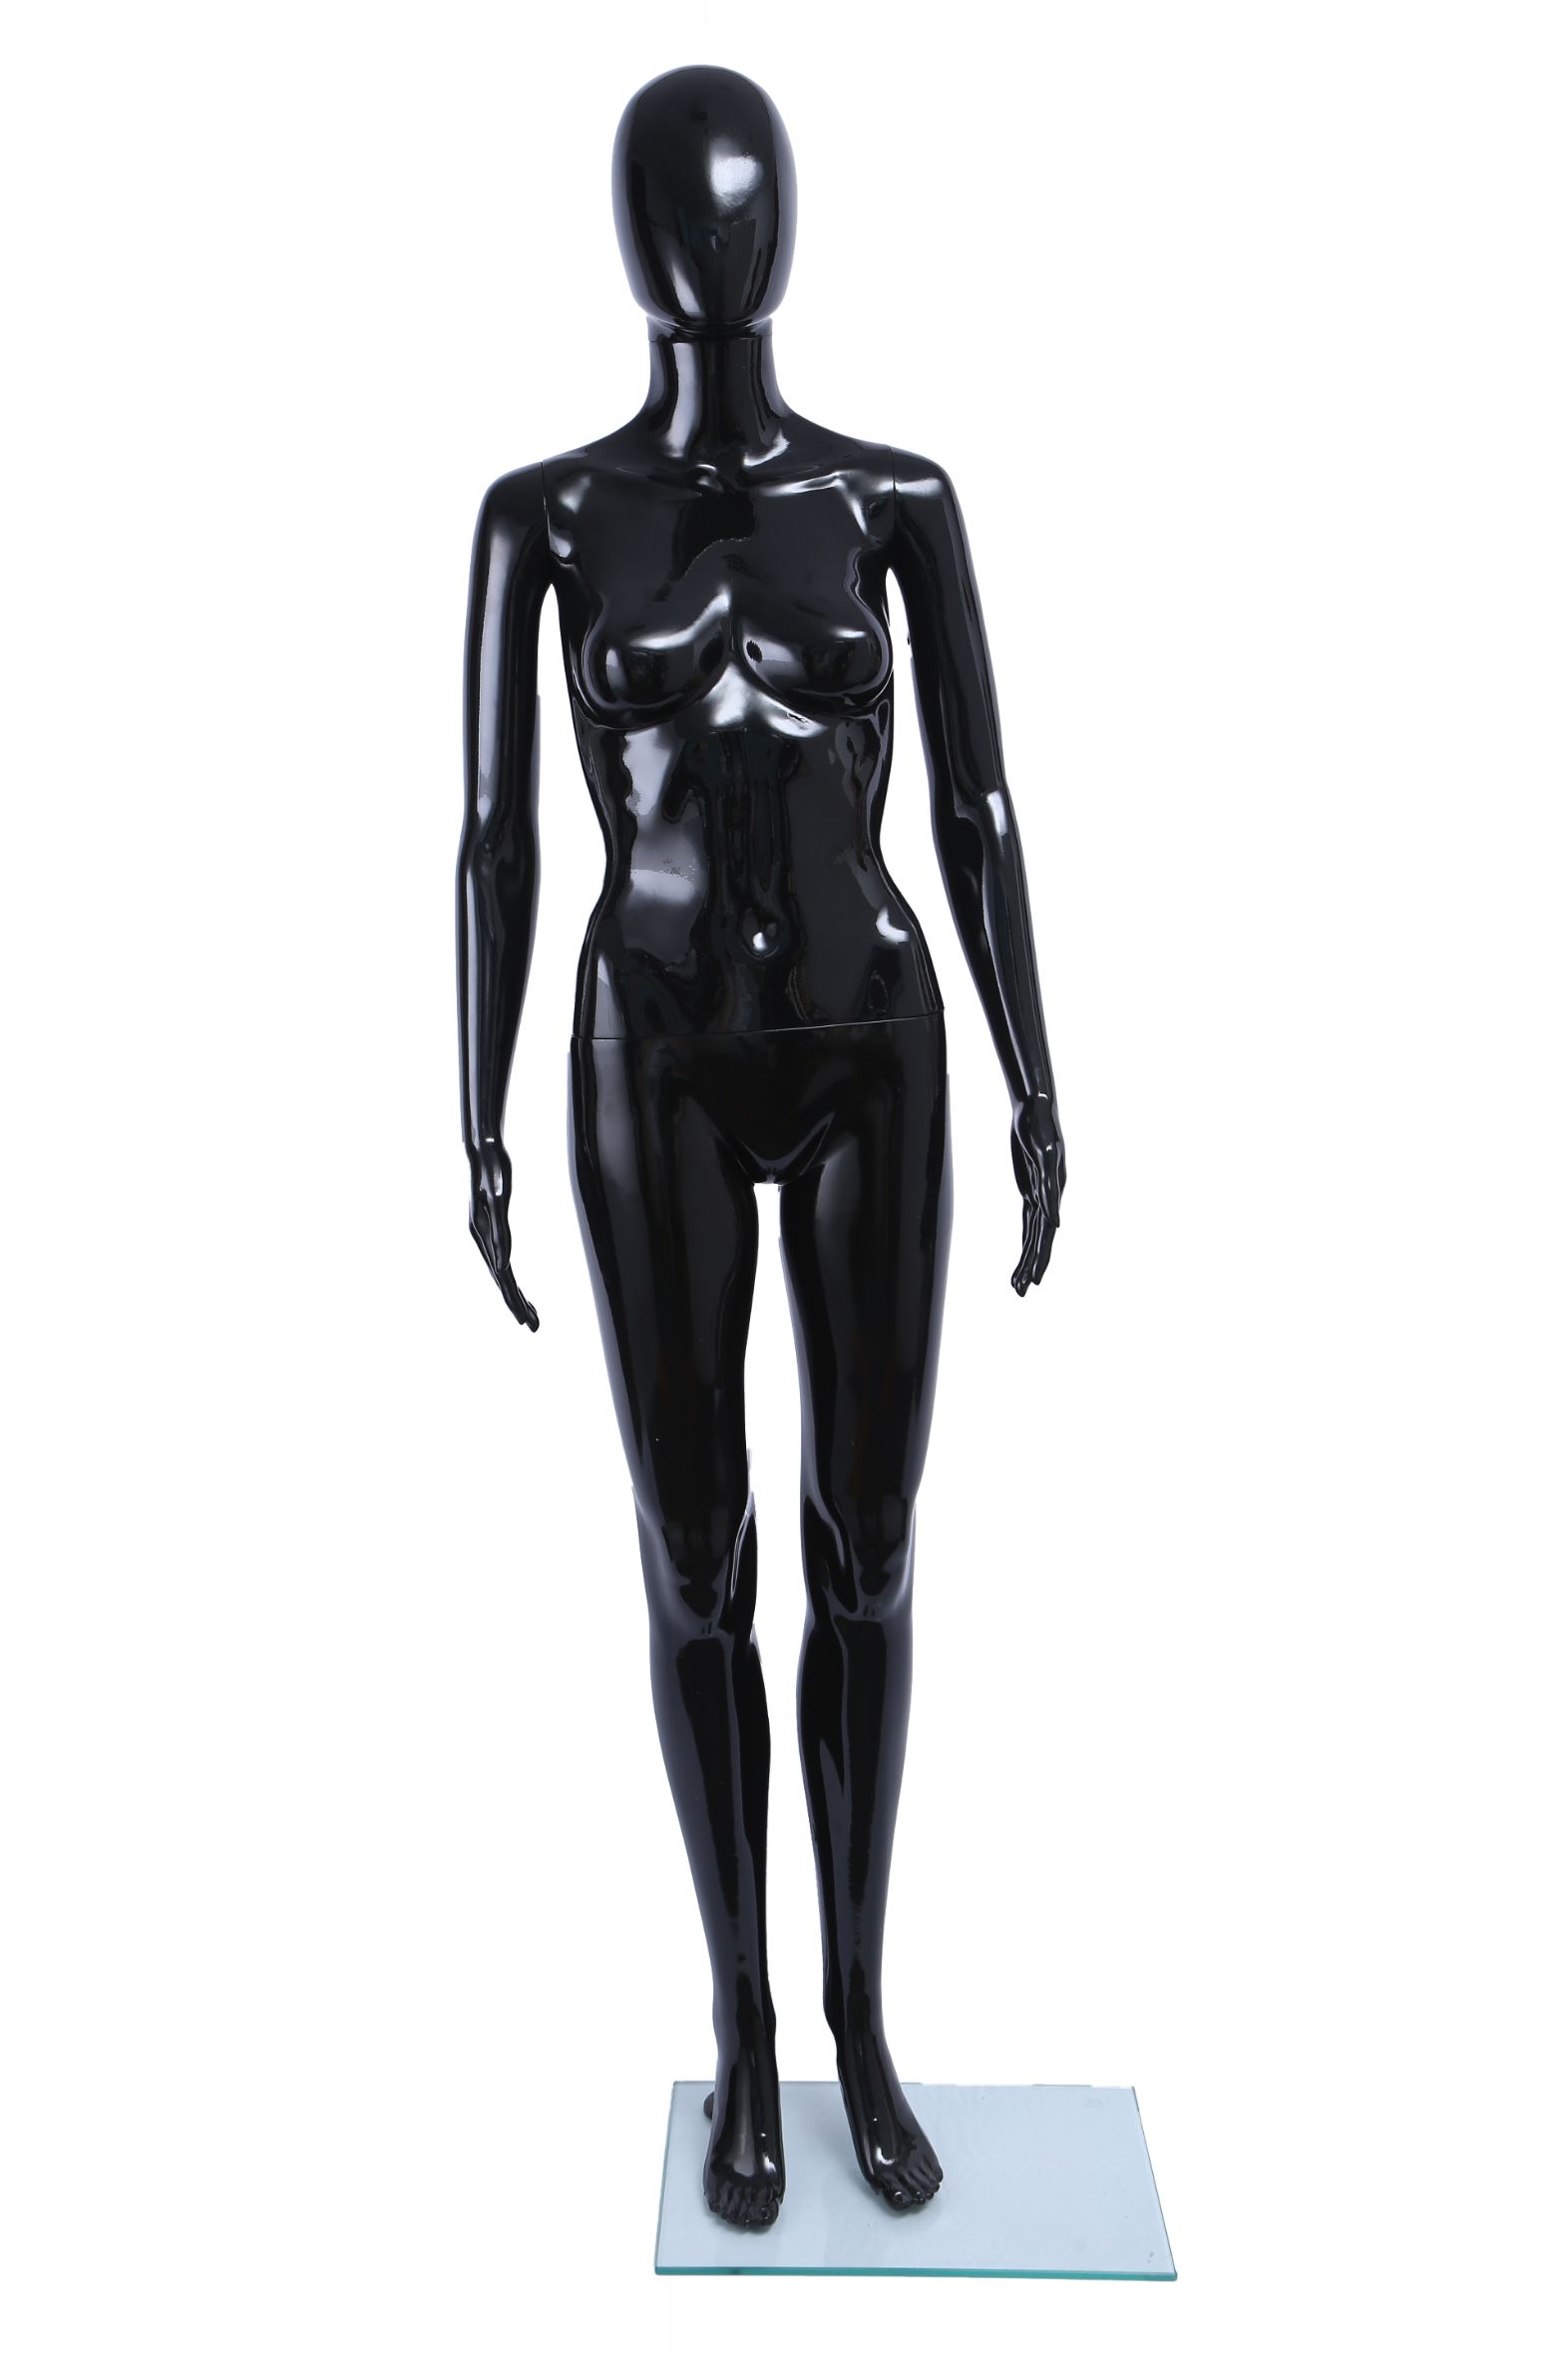 旭峰厂家直销塑料人体模特喷漆亮光黑性感女模详情图1